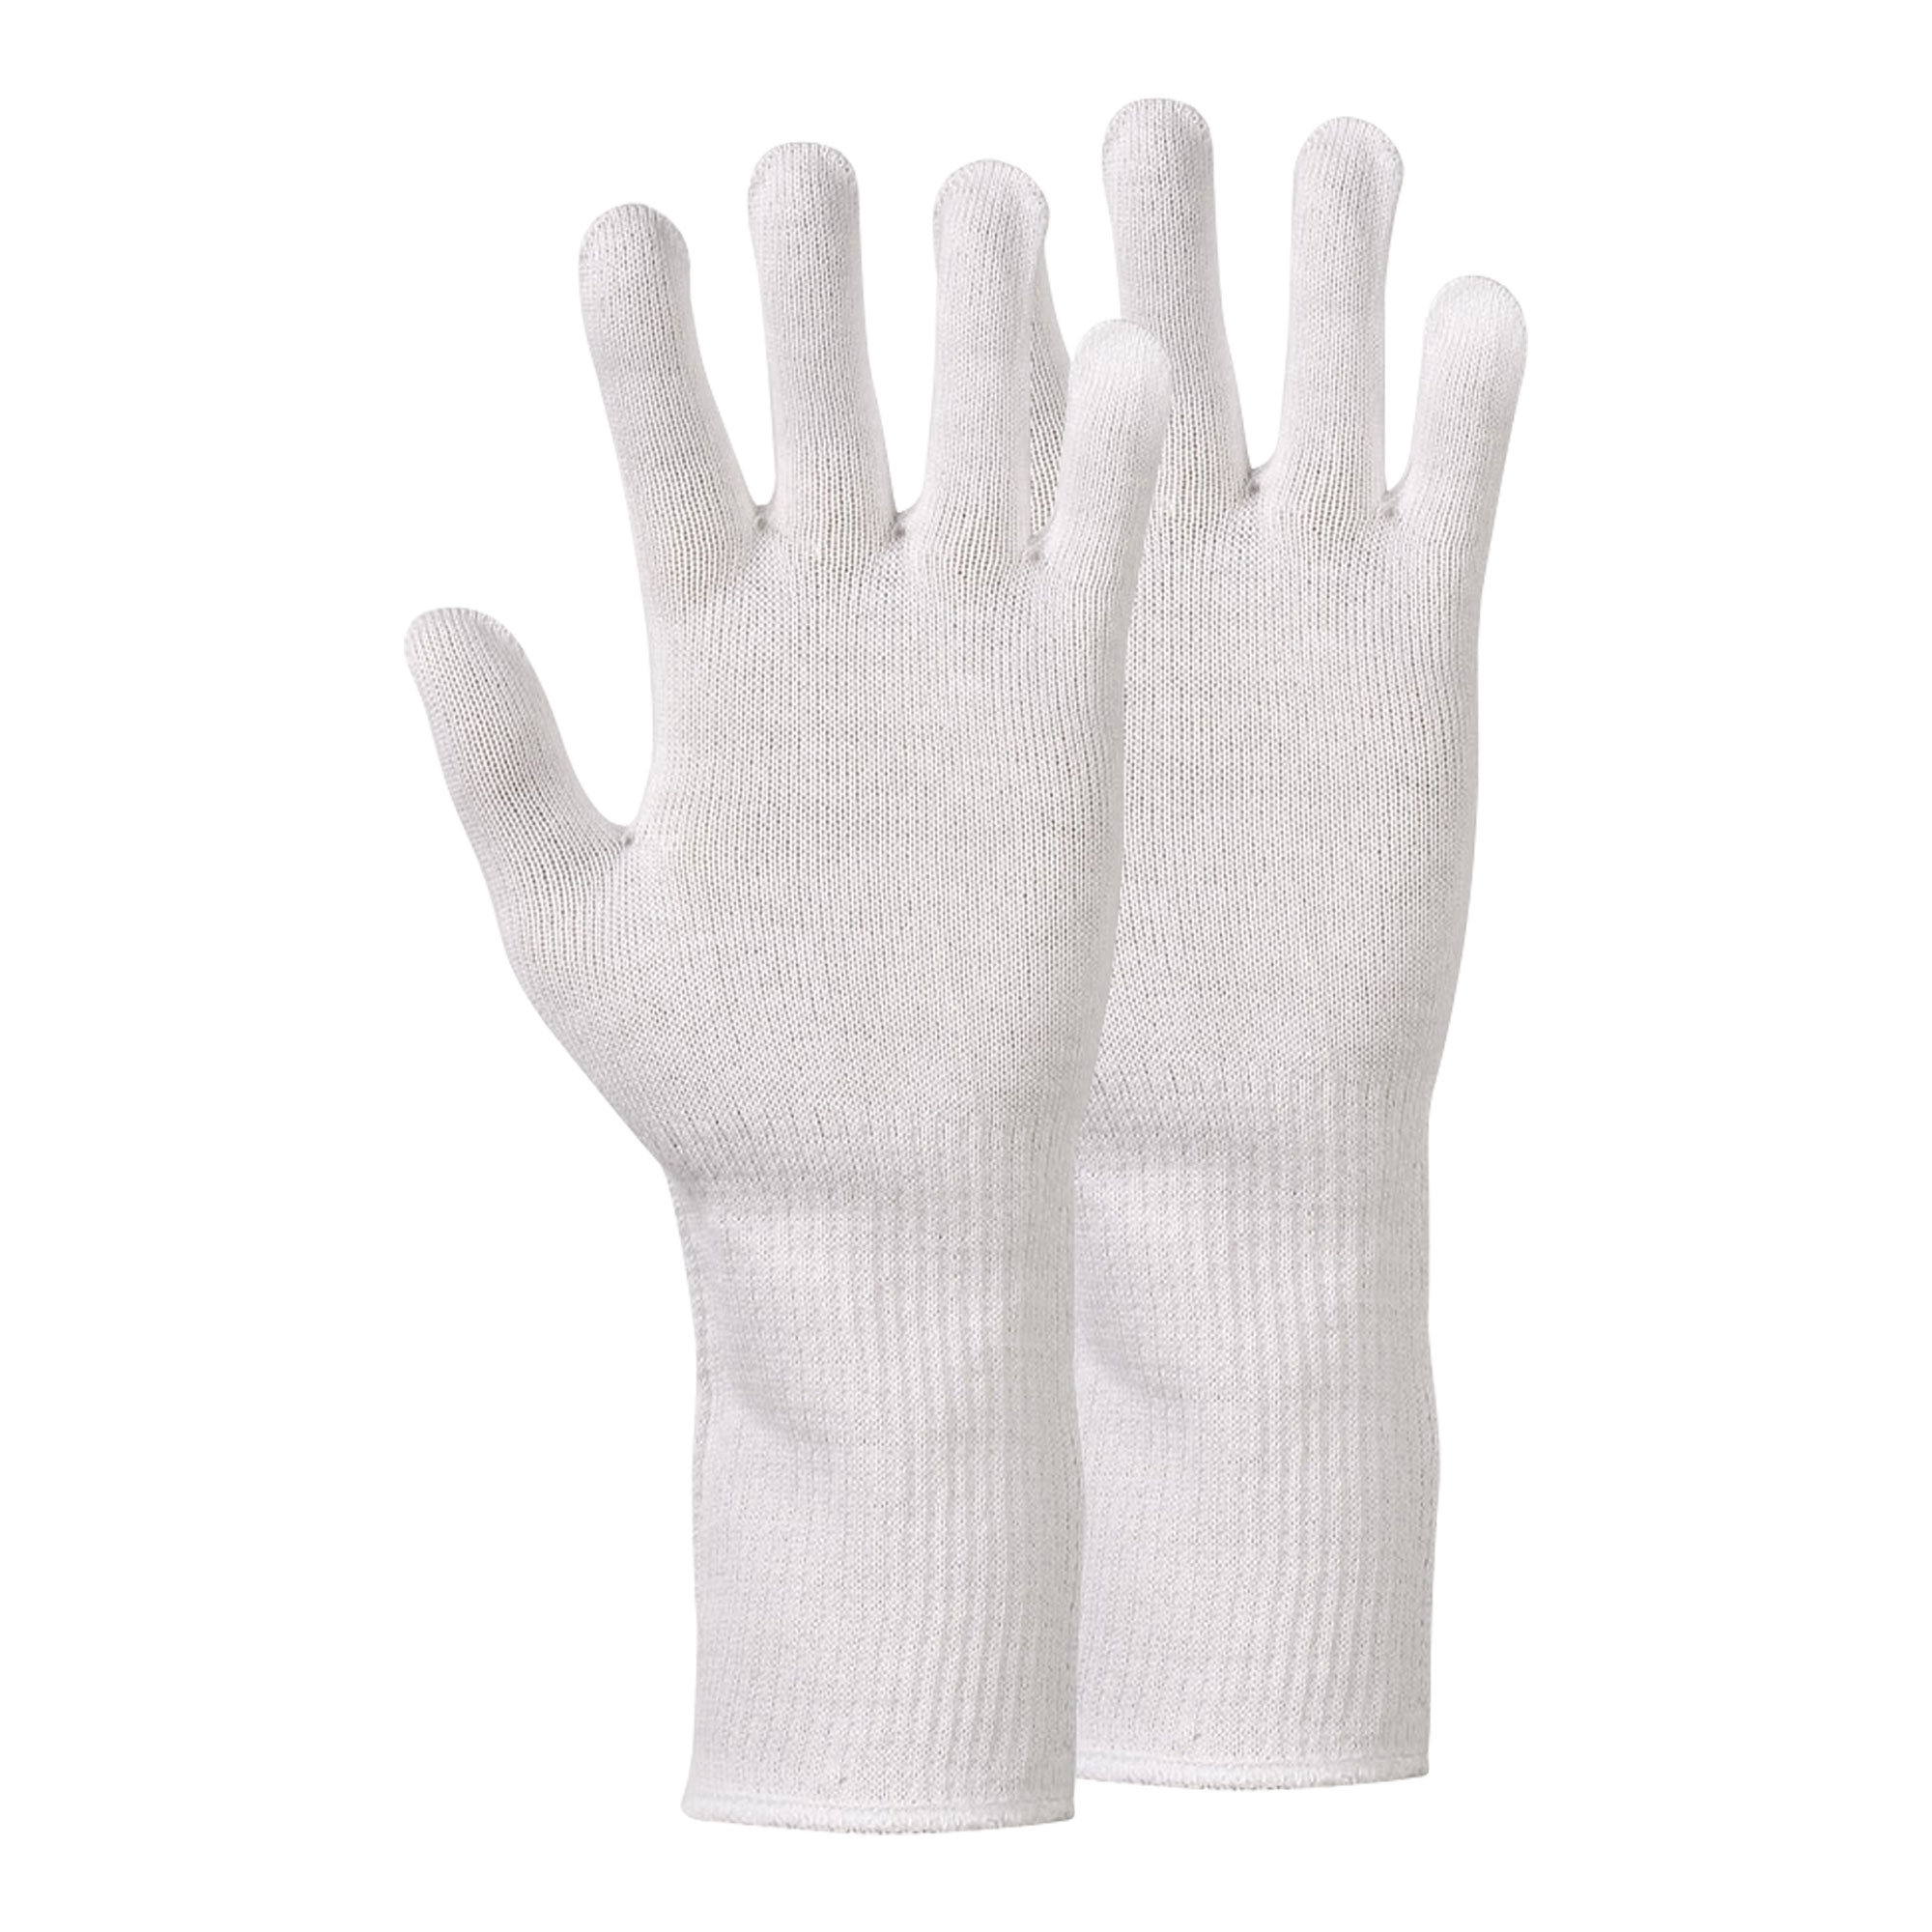 Handschuhe aus 100% Baumwolle sind optimal als Unterziehhandschuhe geeignet, mehrfach waschbar und nahtfrei gestrickt.